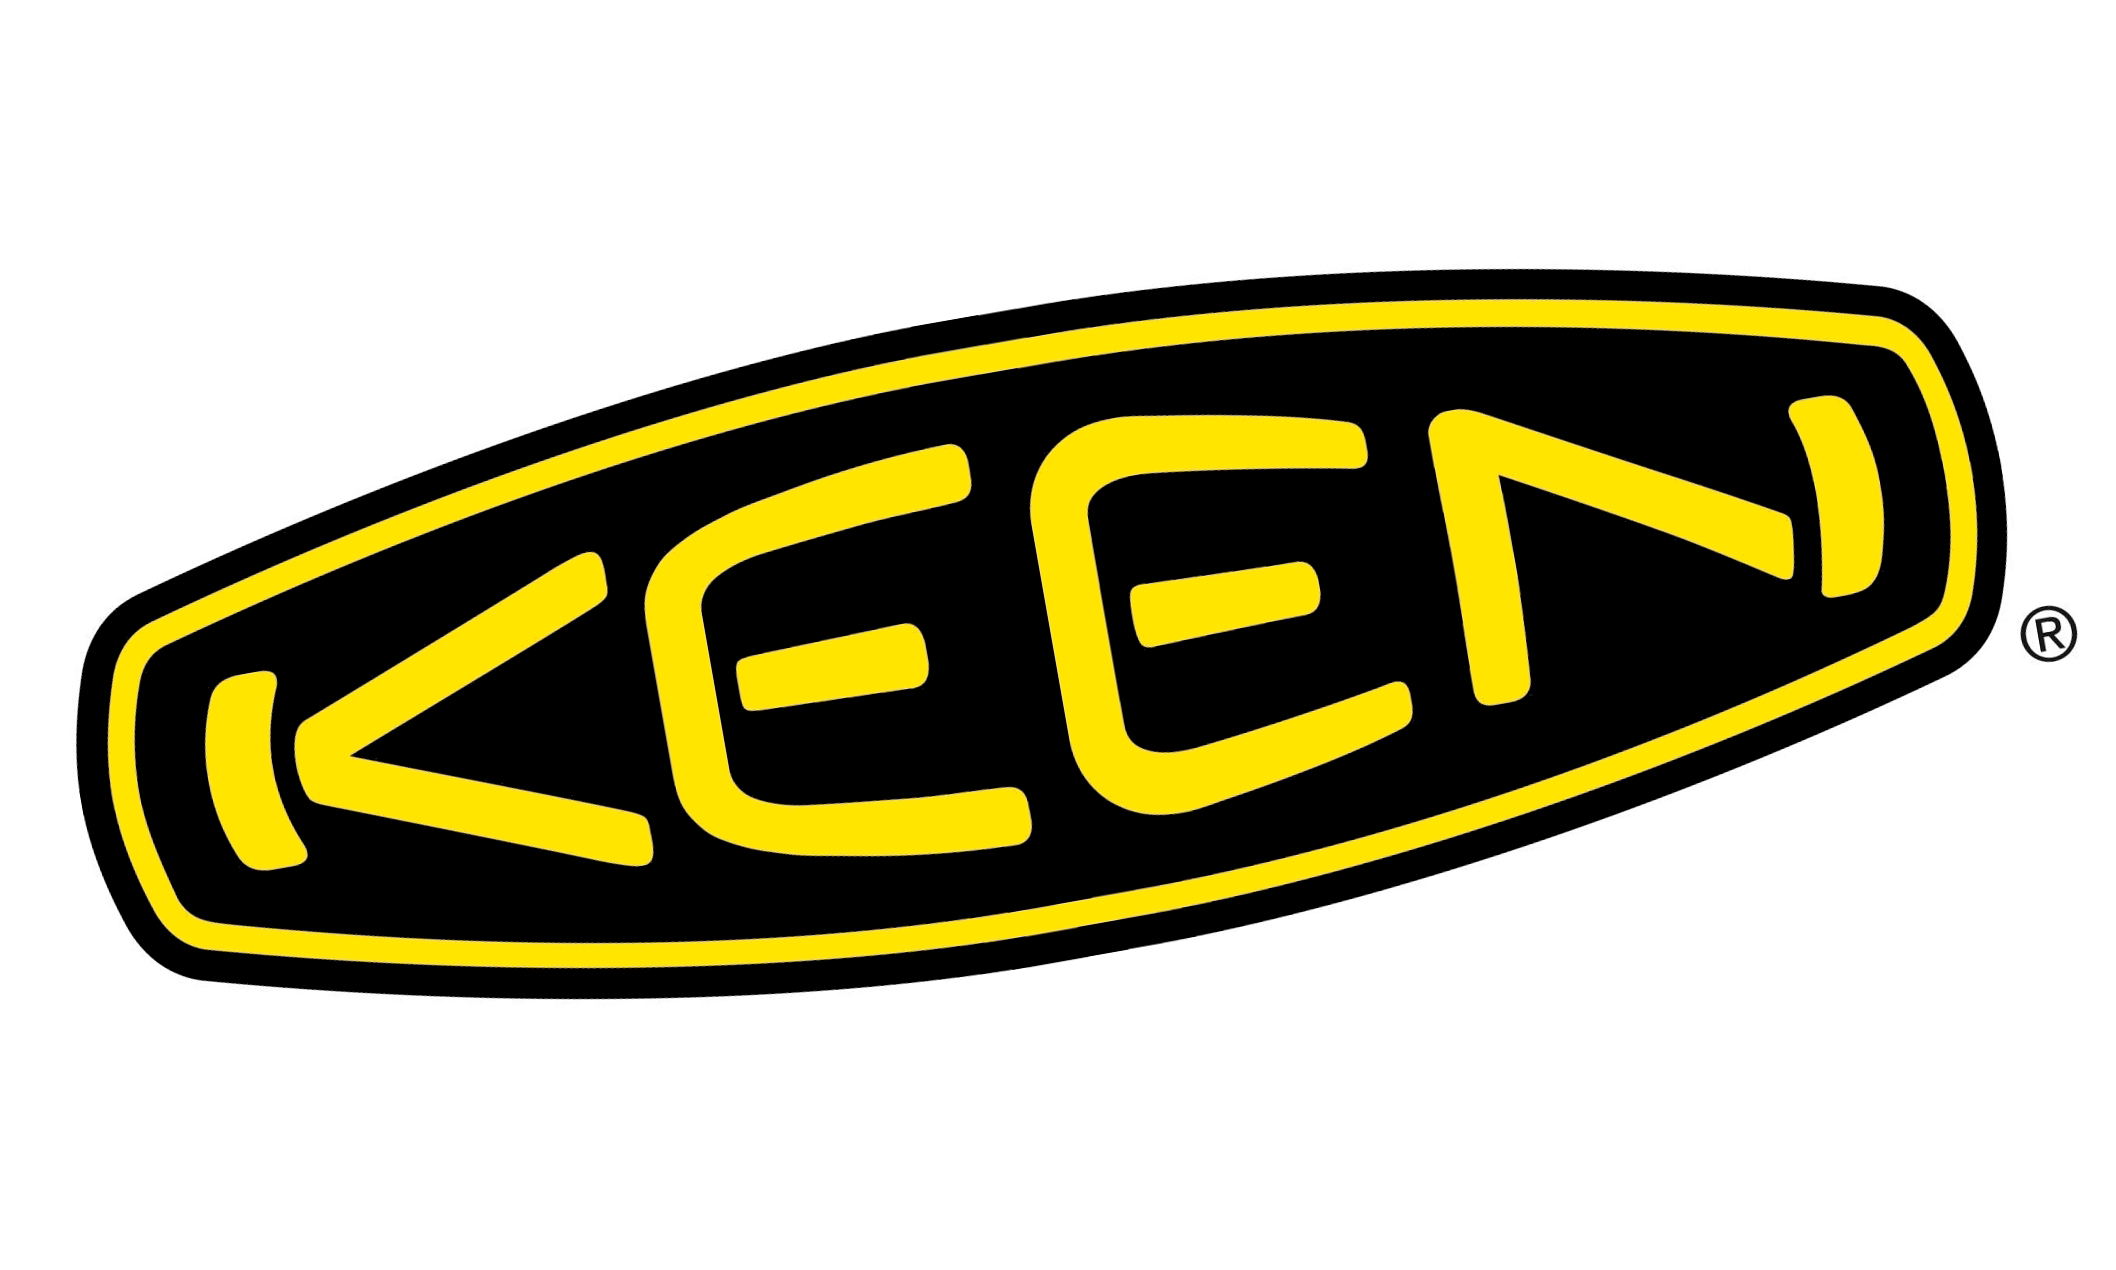 户外鞋履品牌 KEEN 将向受冠状病毒影响的人群免费提供 10 万双鞋